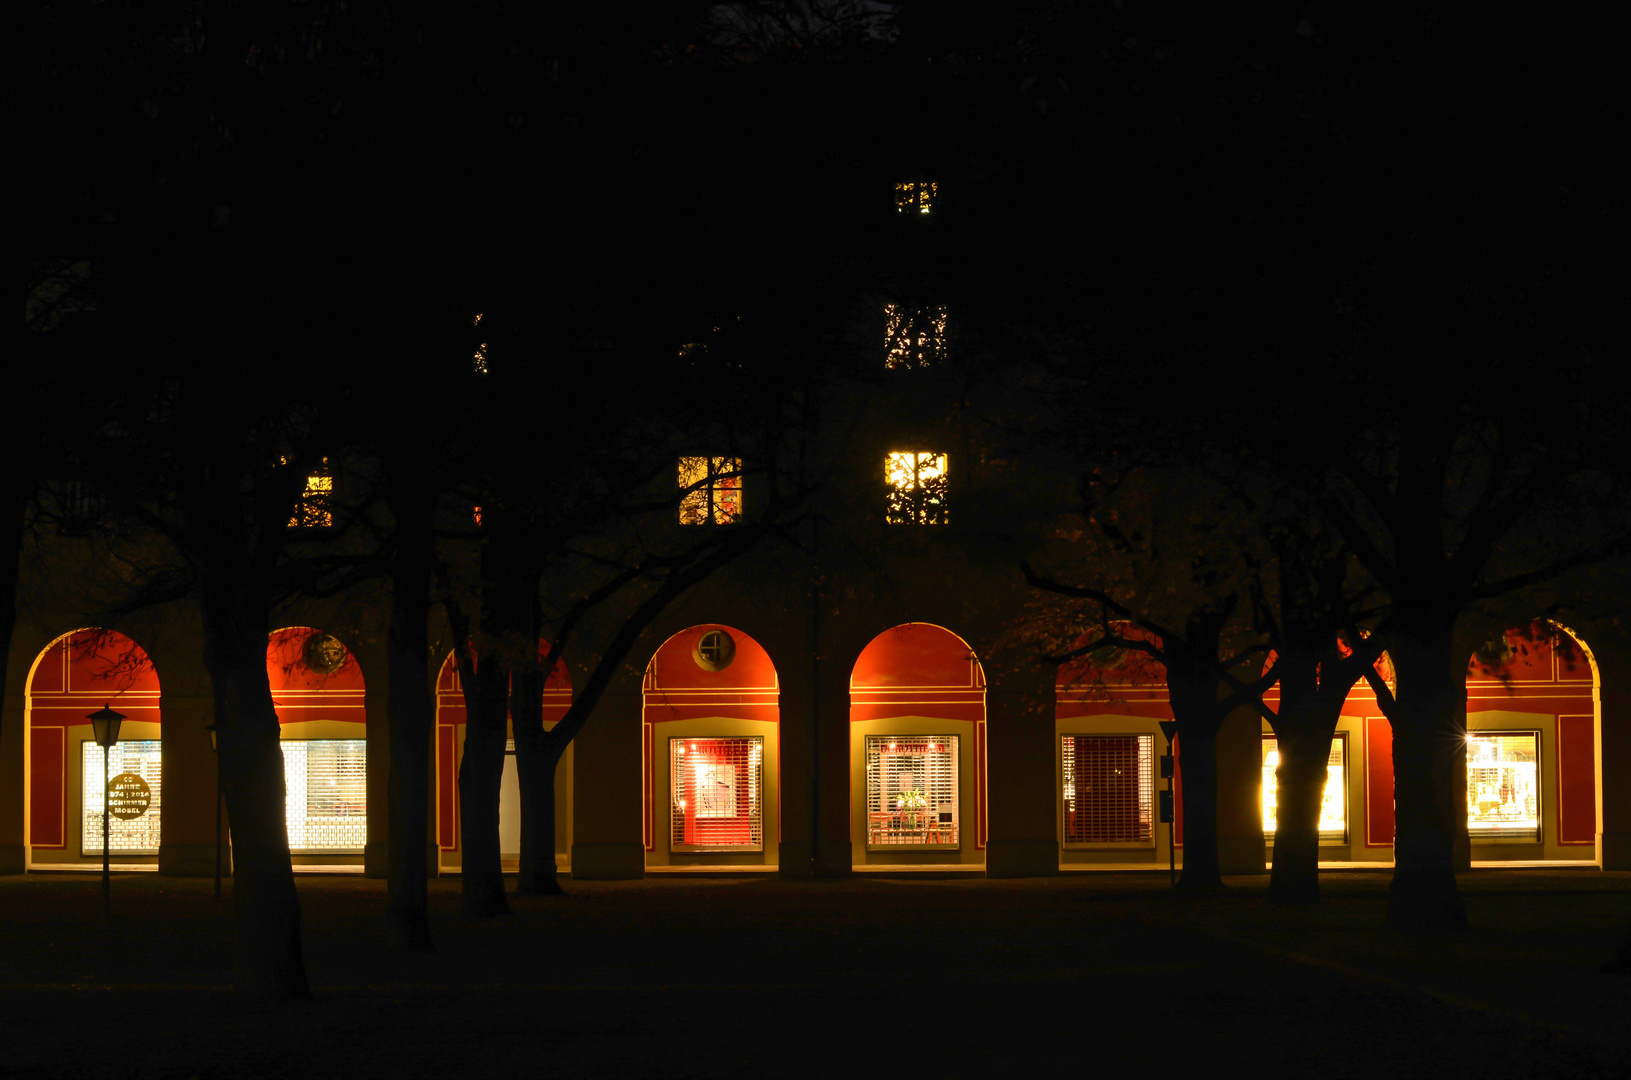 Galerie am Hofgarten